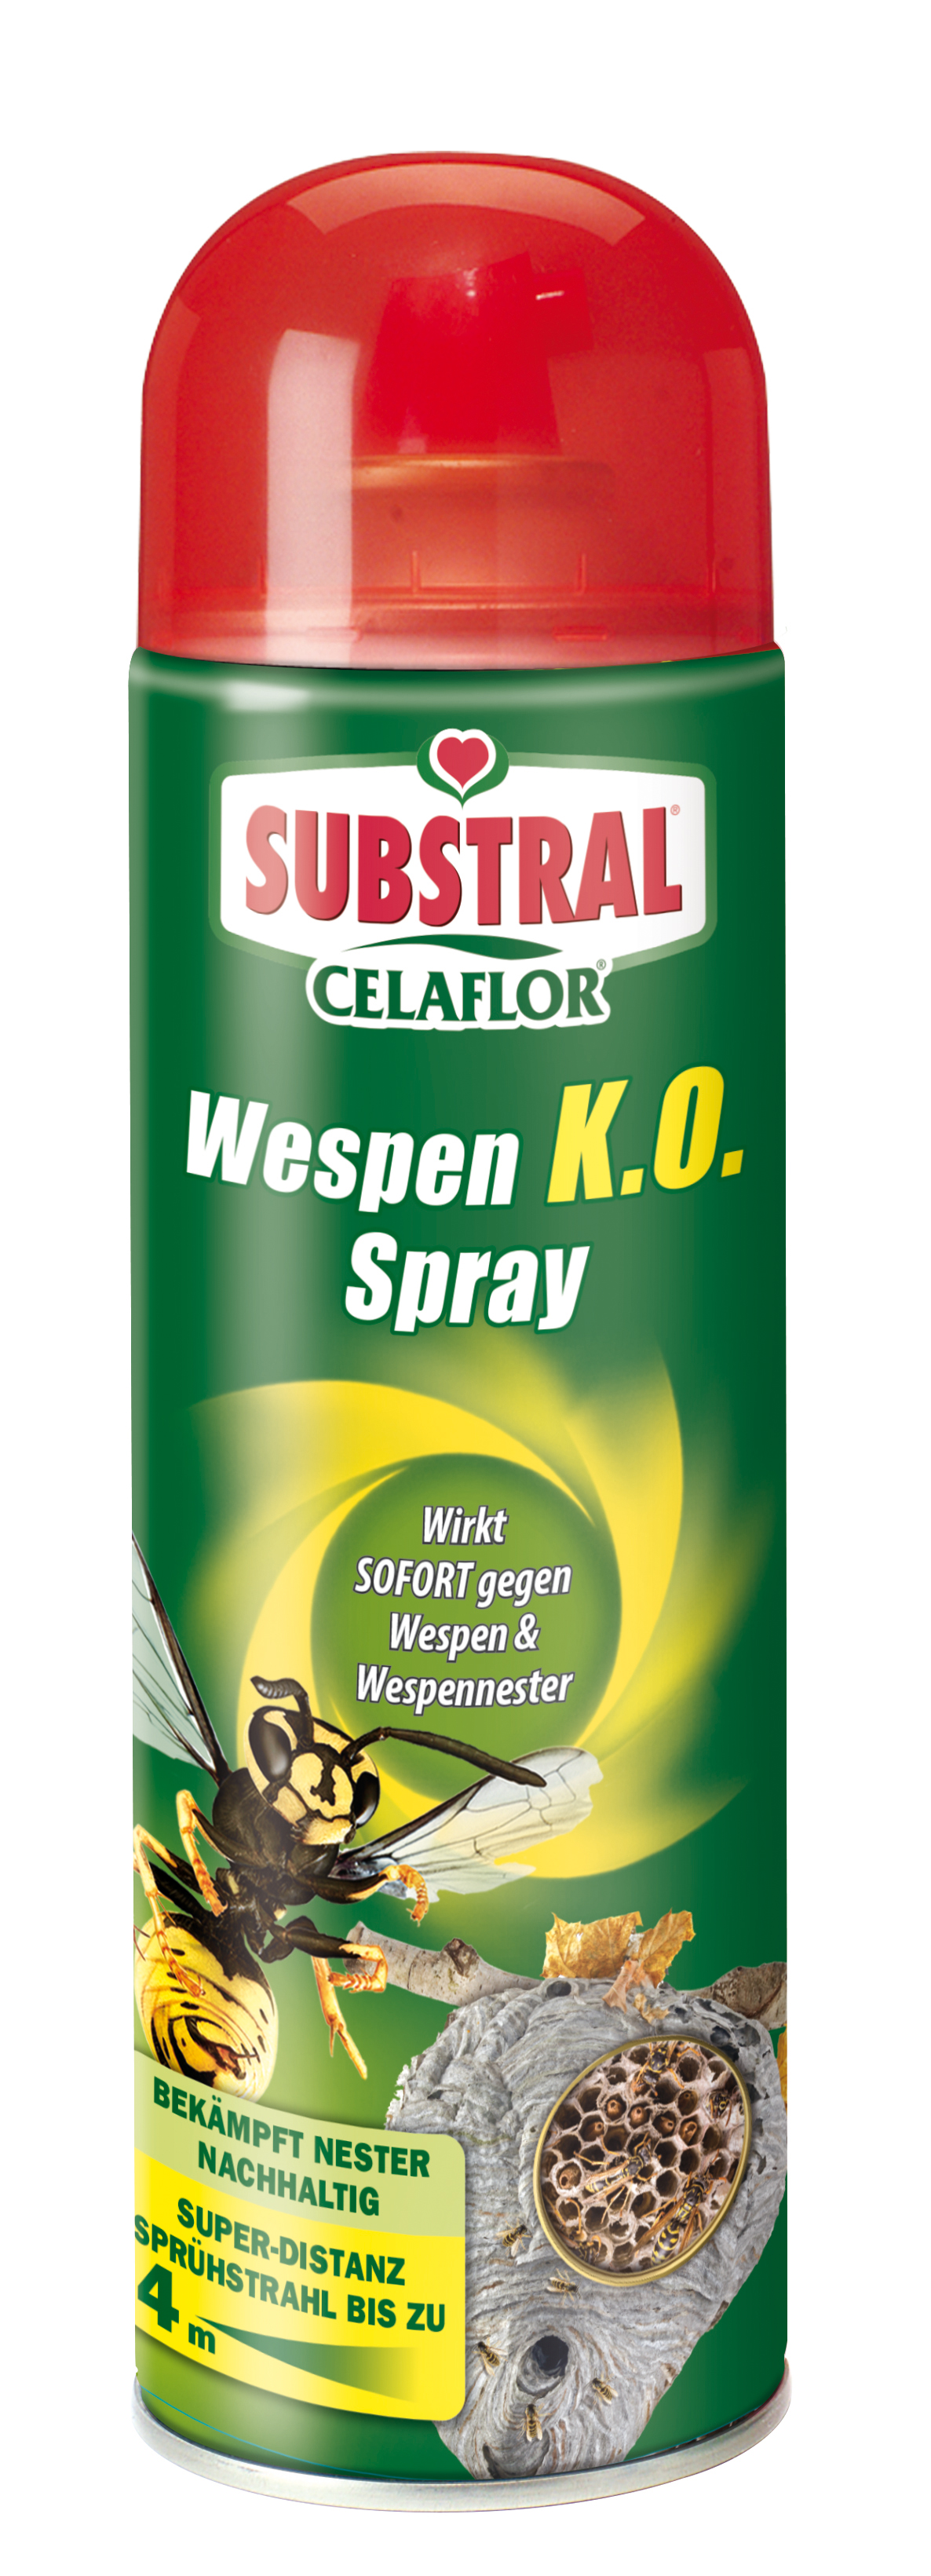 Celaflor Wespen K.O.-Spray 500ml